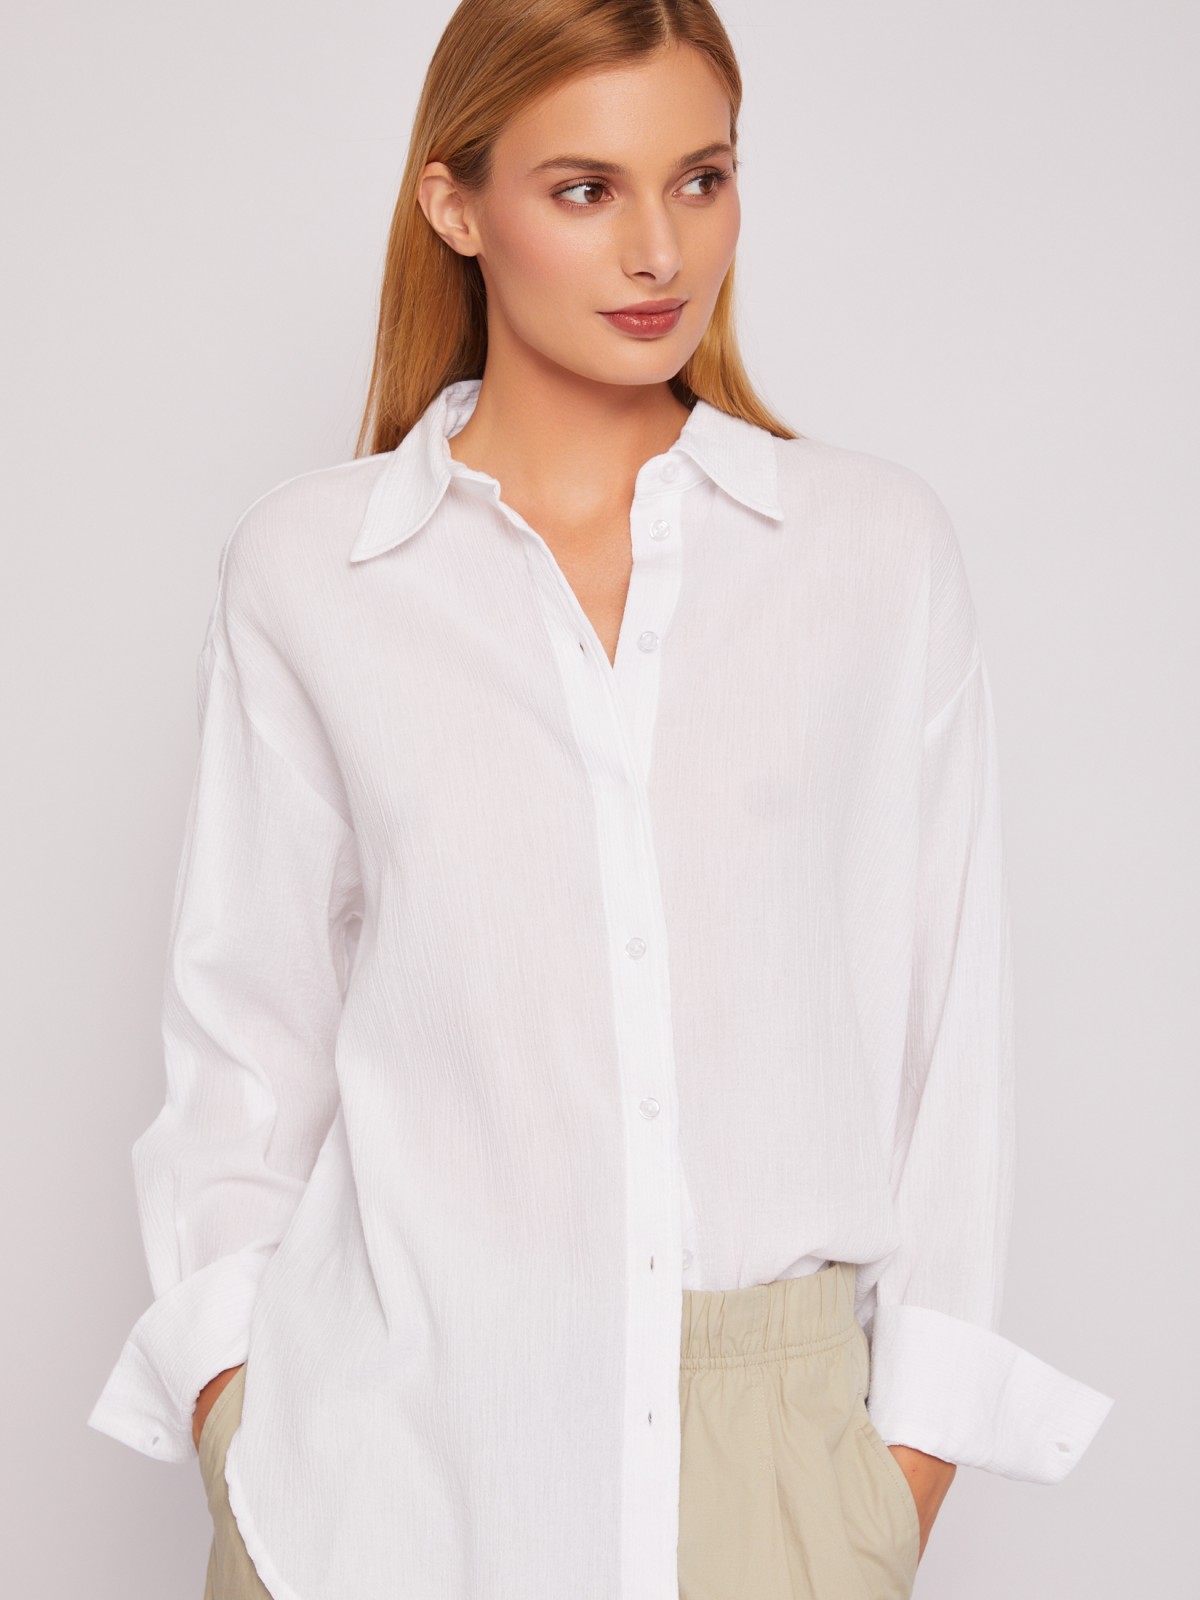 Рубашка оверсайз из хлопка с длинным рукавом zolla 024241159063, цвет белый, размер XS - фото 1